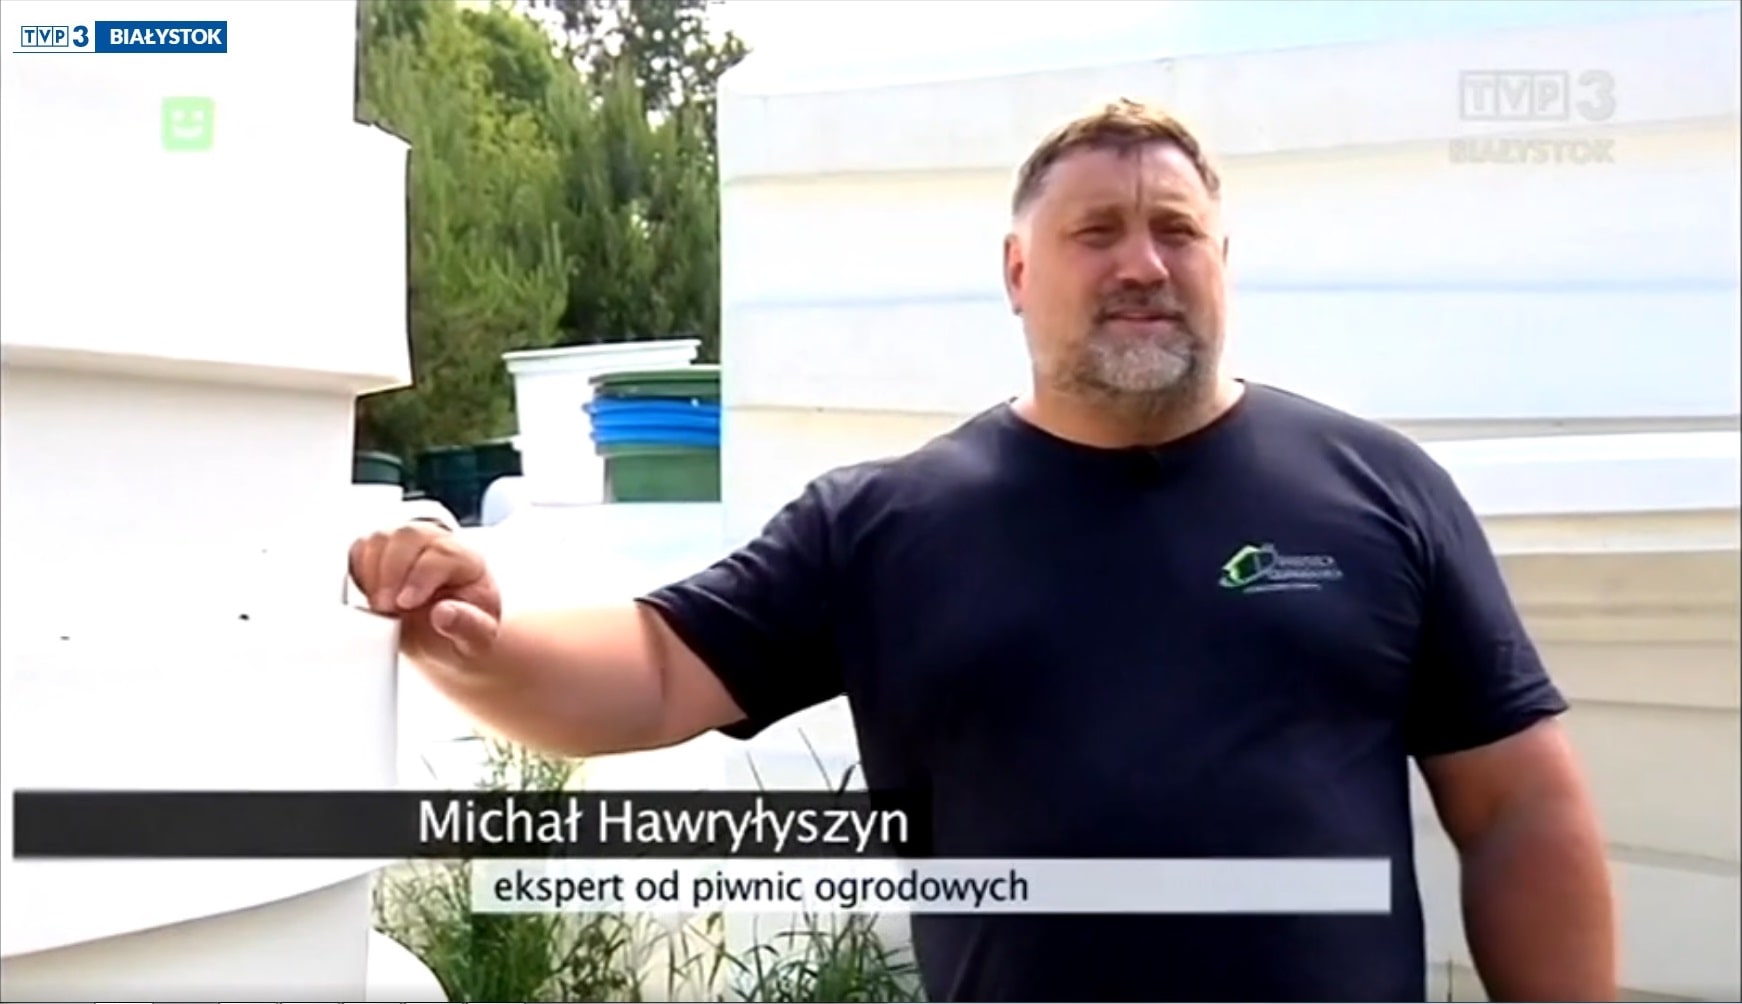 Michal Hawrylyszyn, expert in tuinaarde kelders, Bialystok, Polen — Tuinkelders, ook wel schuilplaatsen genoemd, worden gebruikt om voedsel in op te slaan. Vroeger waren ze in bijna elke tuin te vinden, Tuinkelder 200x350 Natural Fridge 9 296 EUR